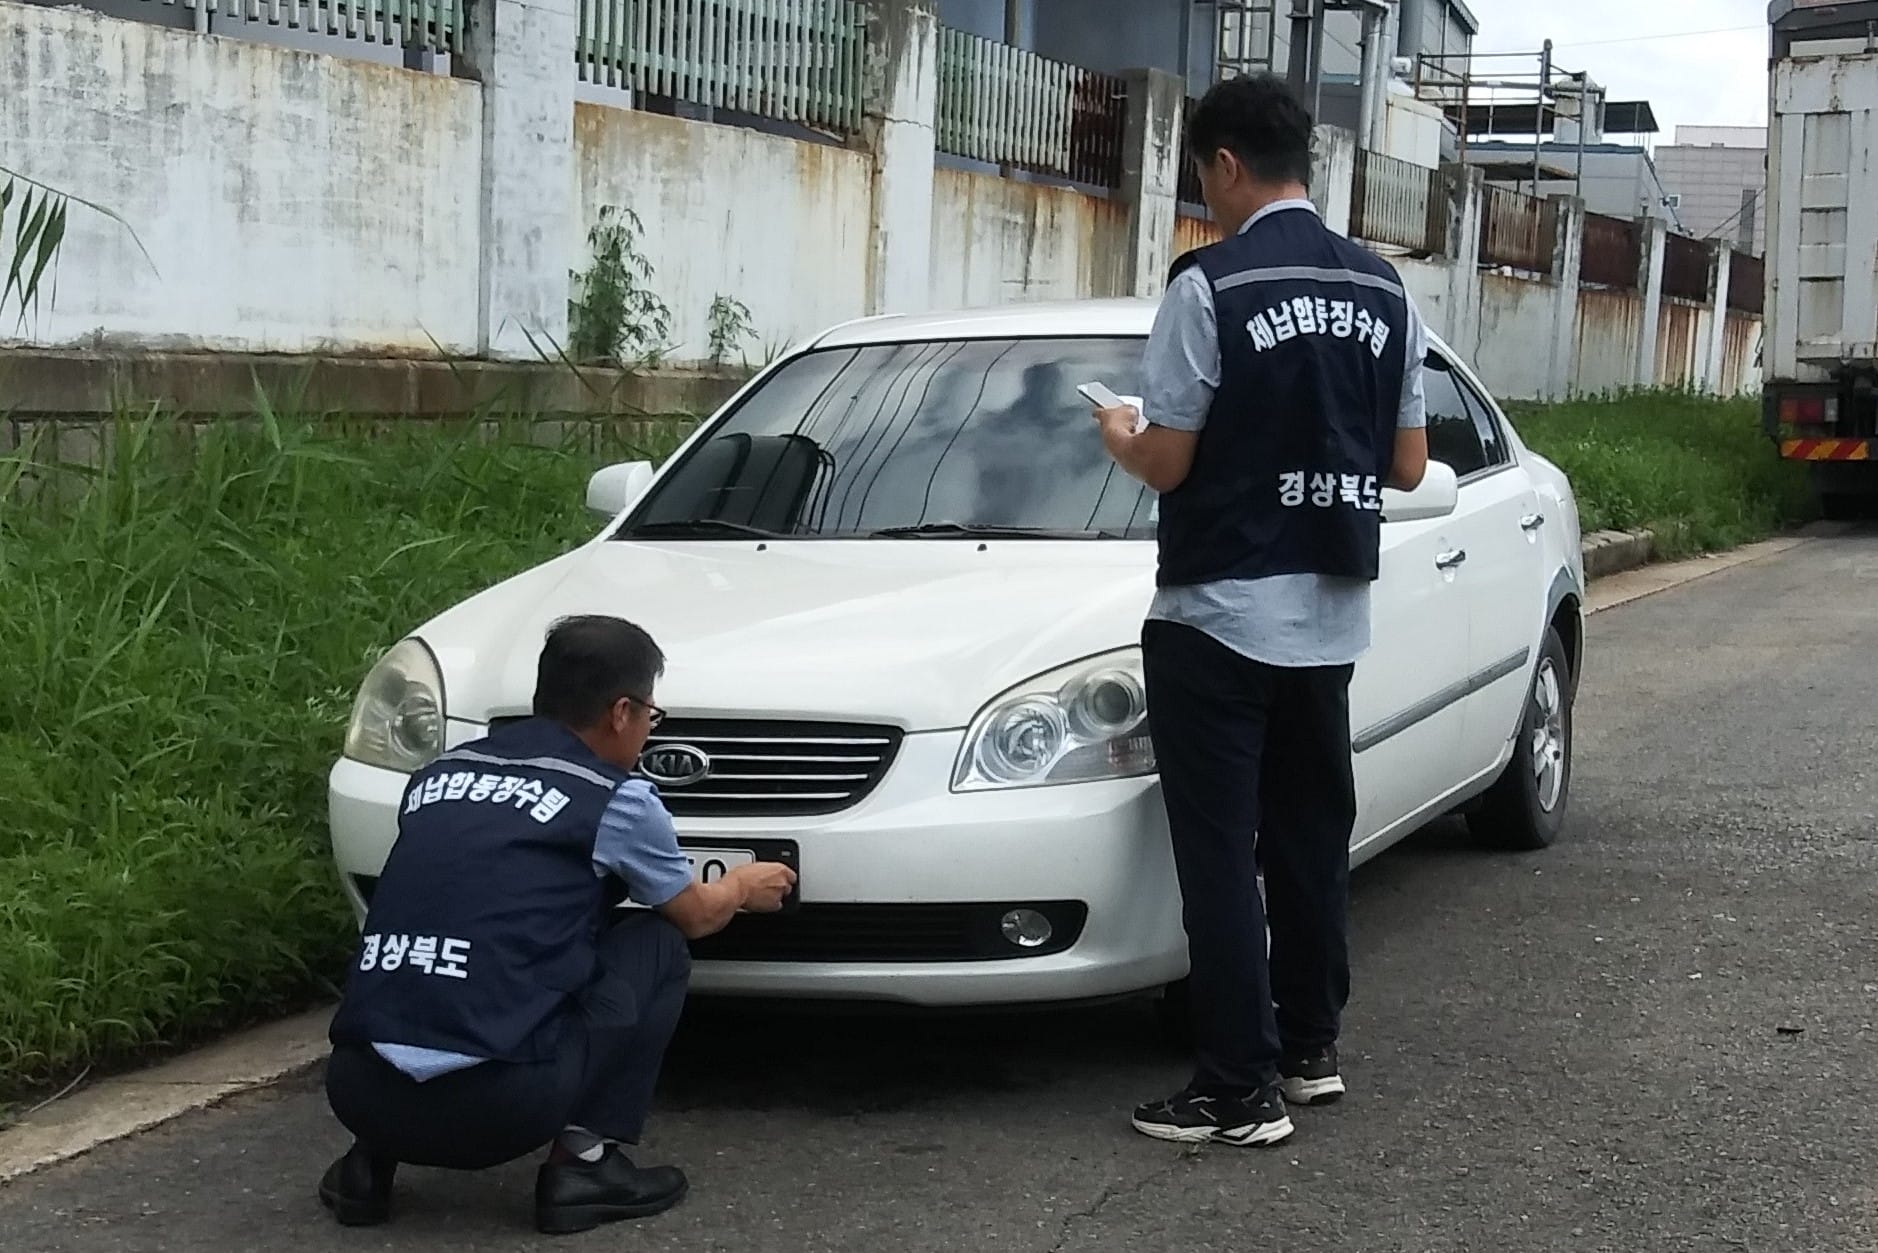 Должностные лица местных властей Ёнчхона сняли номерной знак автомобиля в рамках конфискации активов, связанных с неуплаченными налогами.